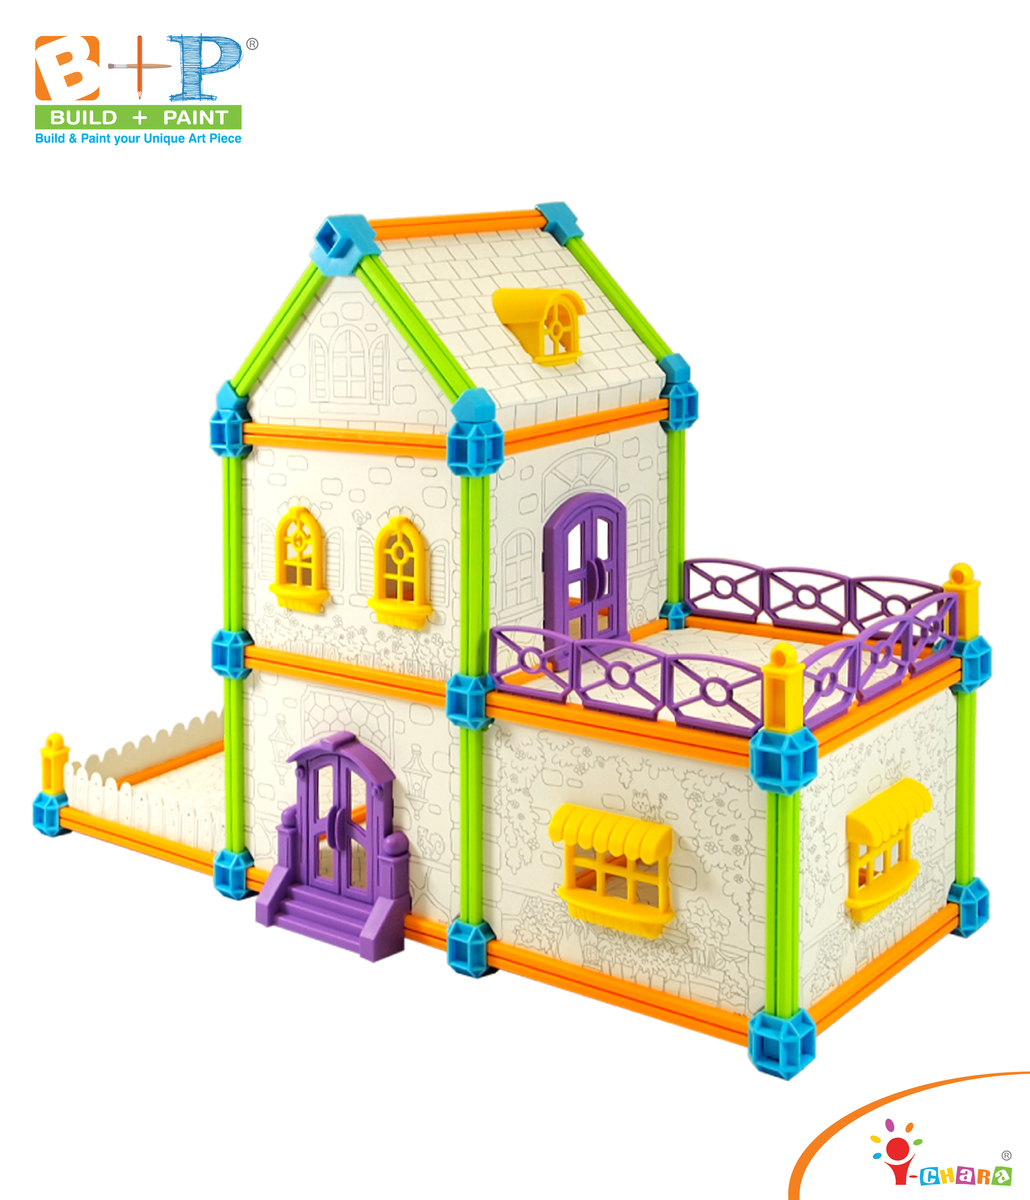 小小藝術建築師 - 鄉郊別墅  親子玩具 兒童益智玩具 幼兒教育玩具 建築模型 填色畫畫 STEAM STEM  科學教育玩具 